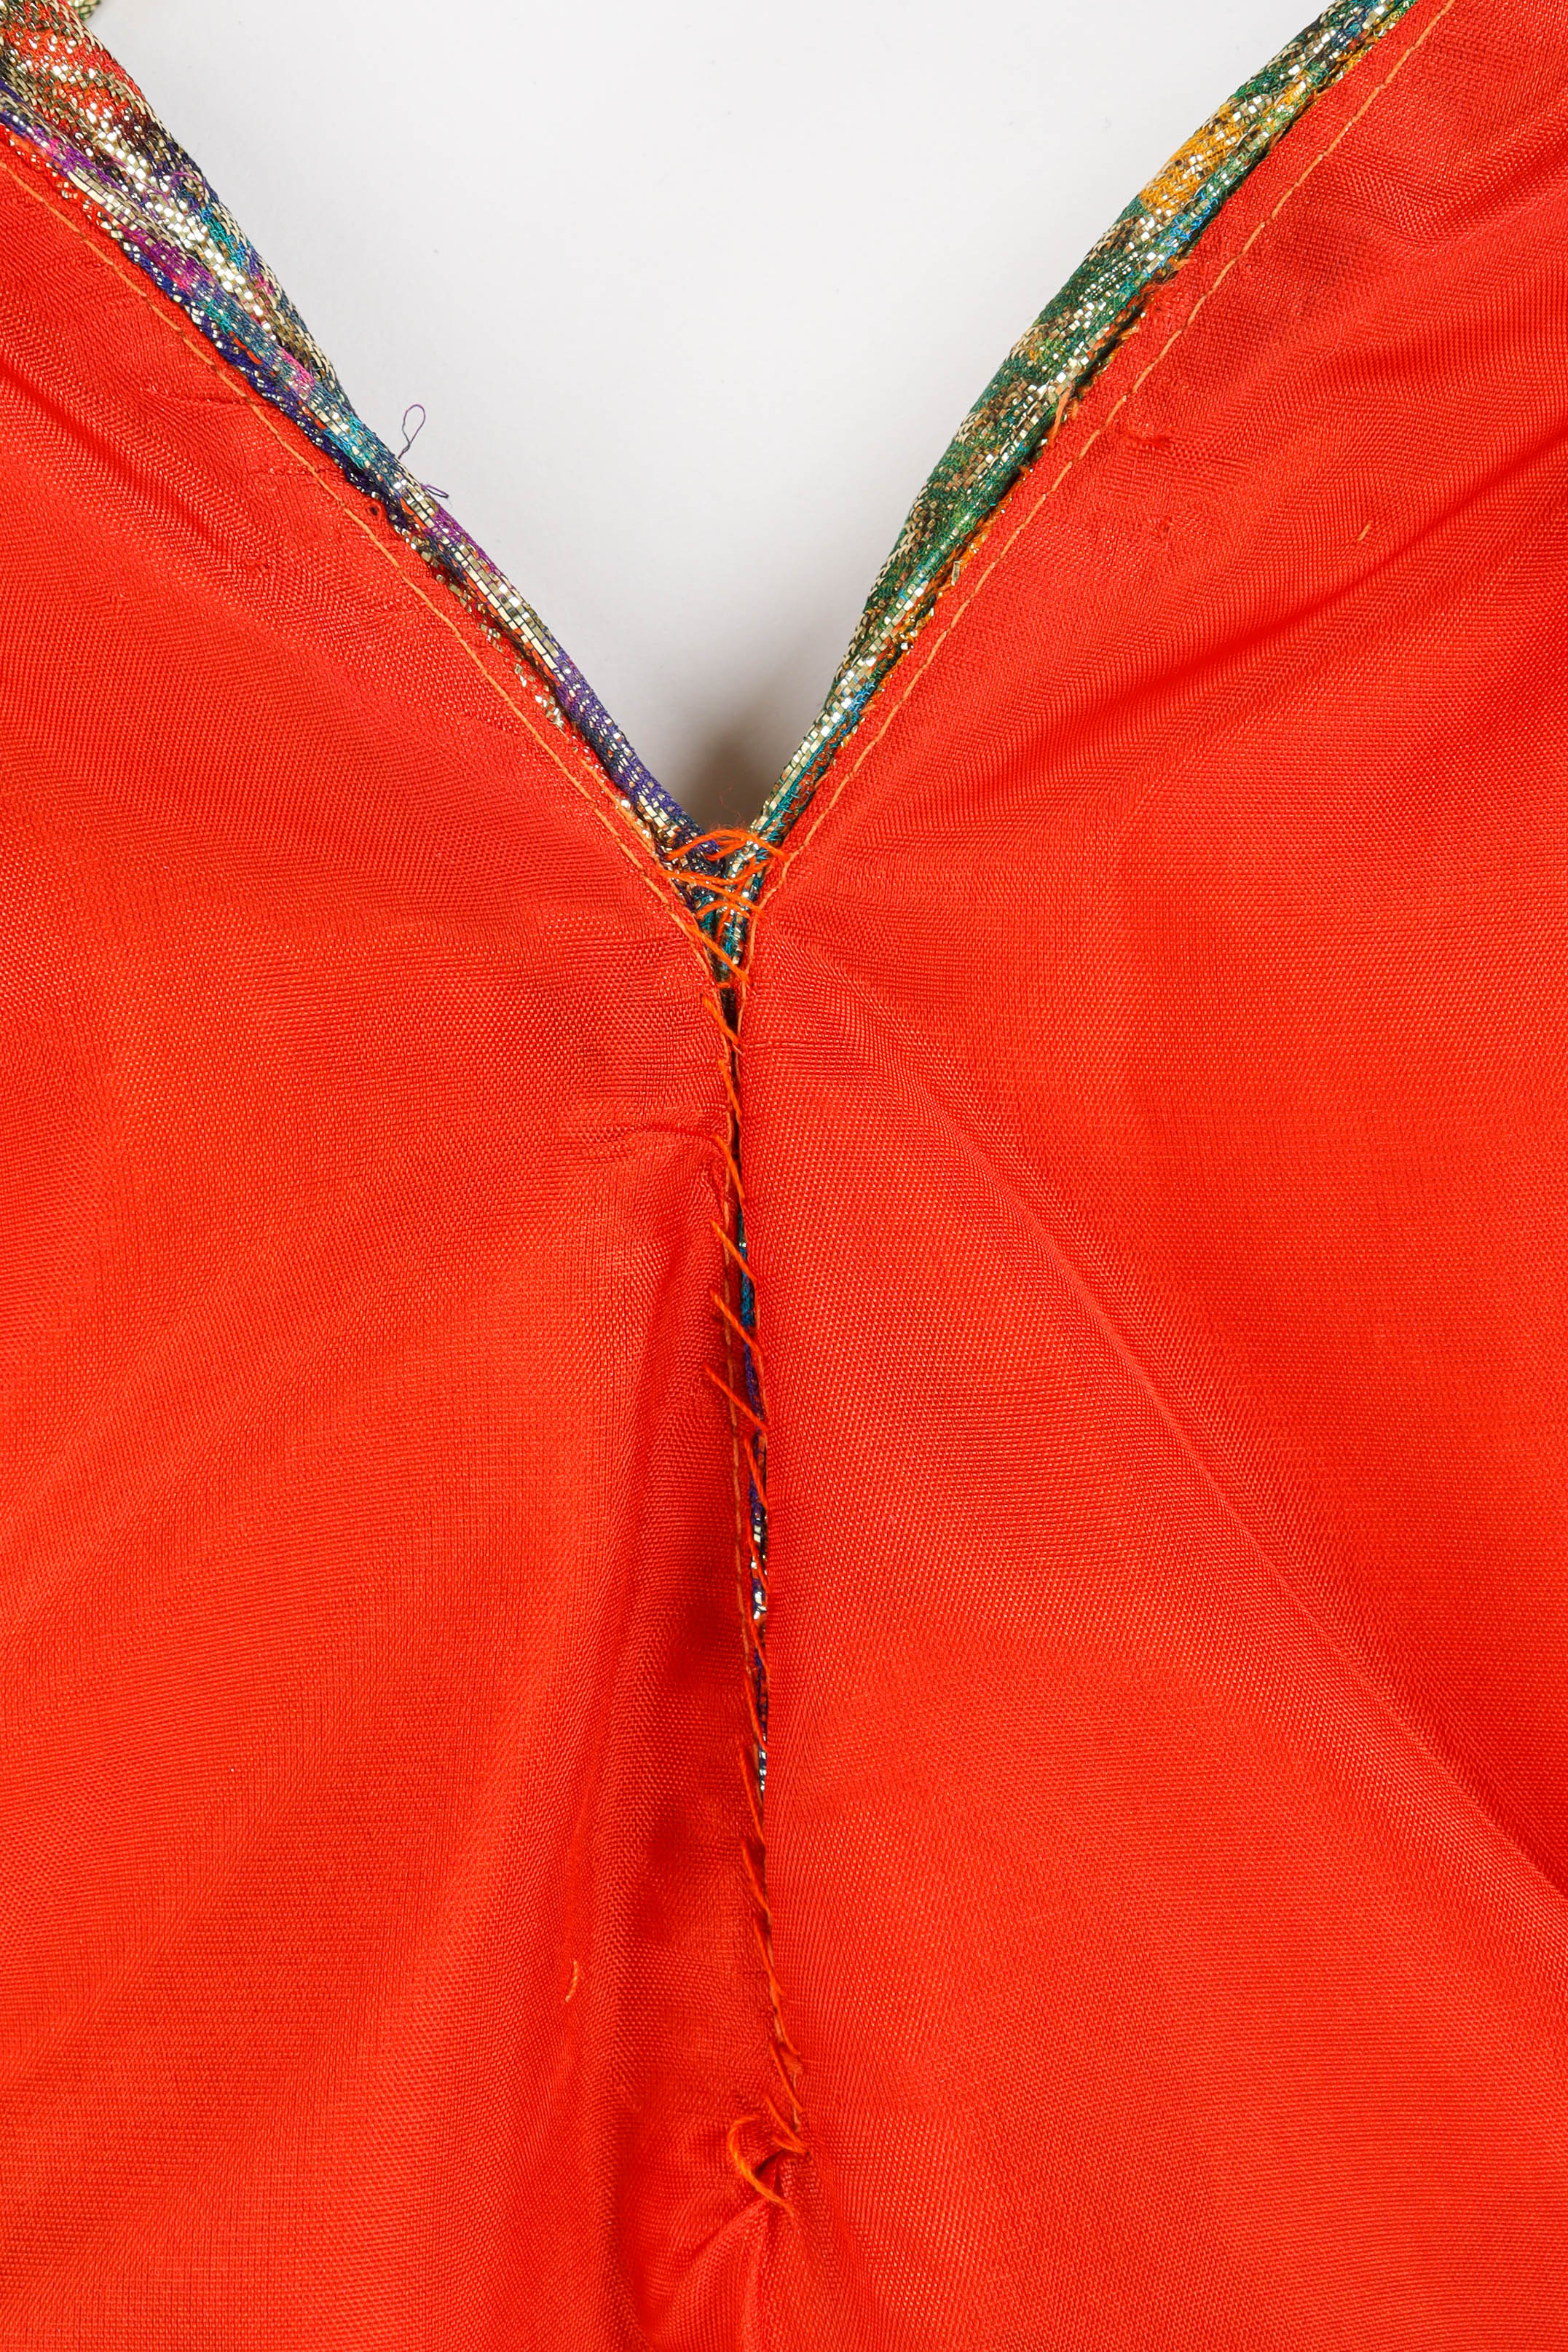 Vintage Peter Keppler Lamé Fleur Ruffle Dress V neck liner stitches @ Recess LA